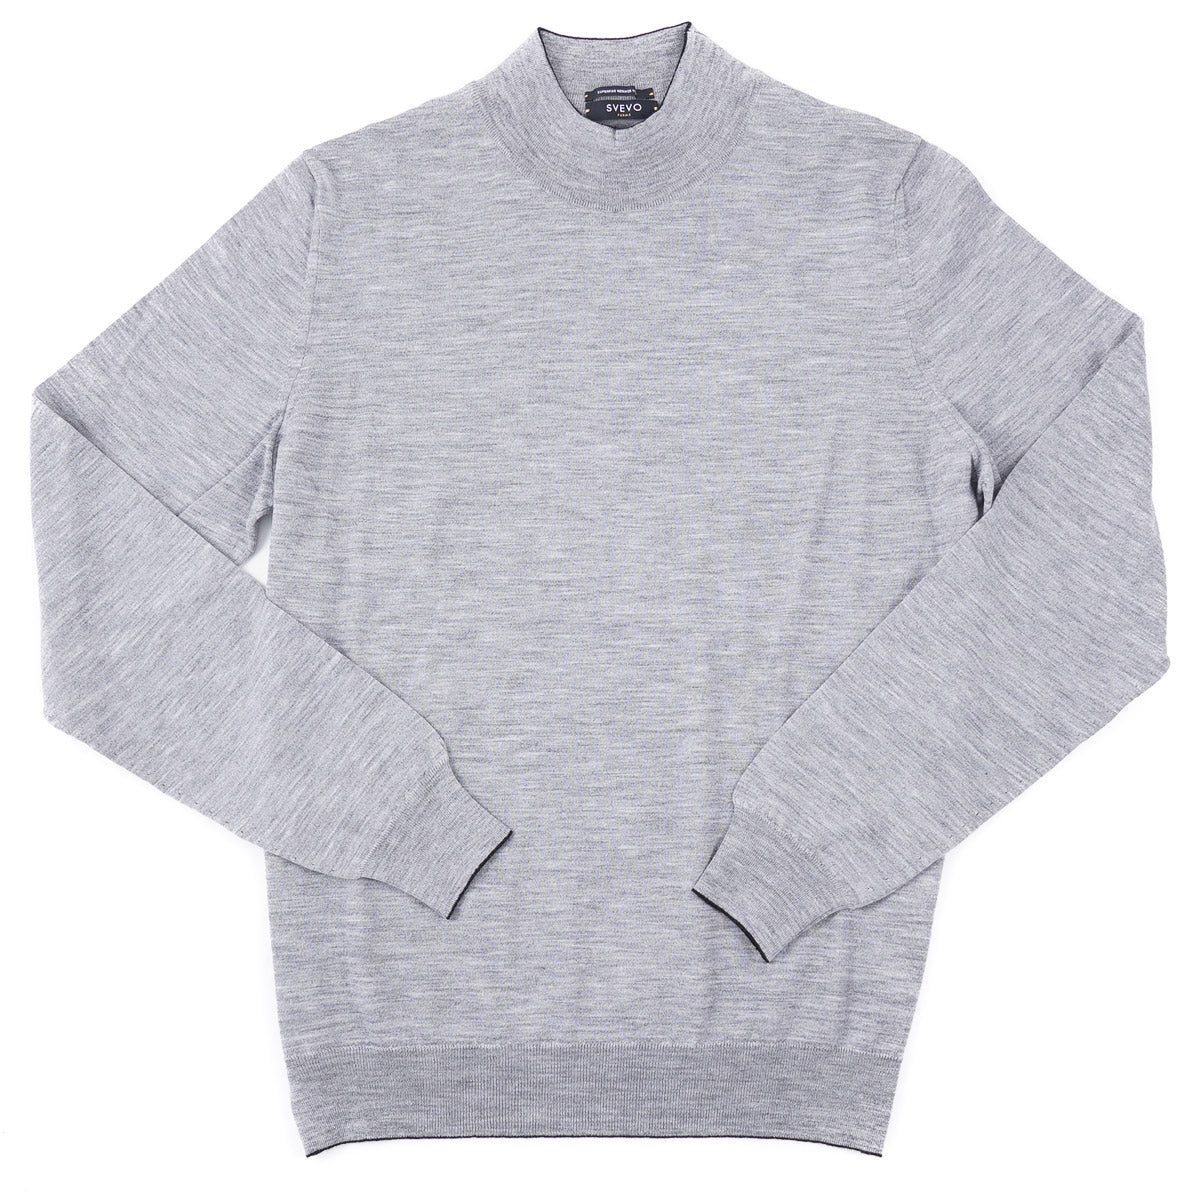 Svevo Superfine Merino Wool Sweater - Top Shelf Apparel